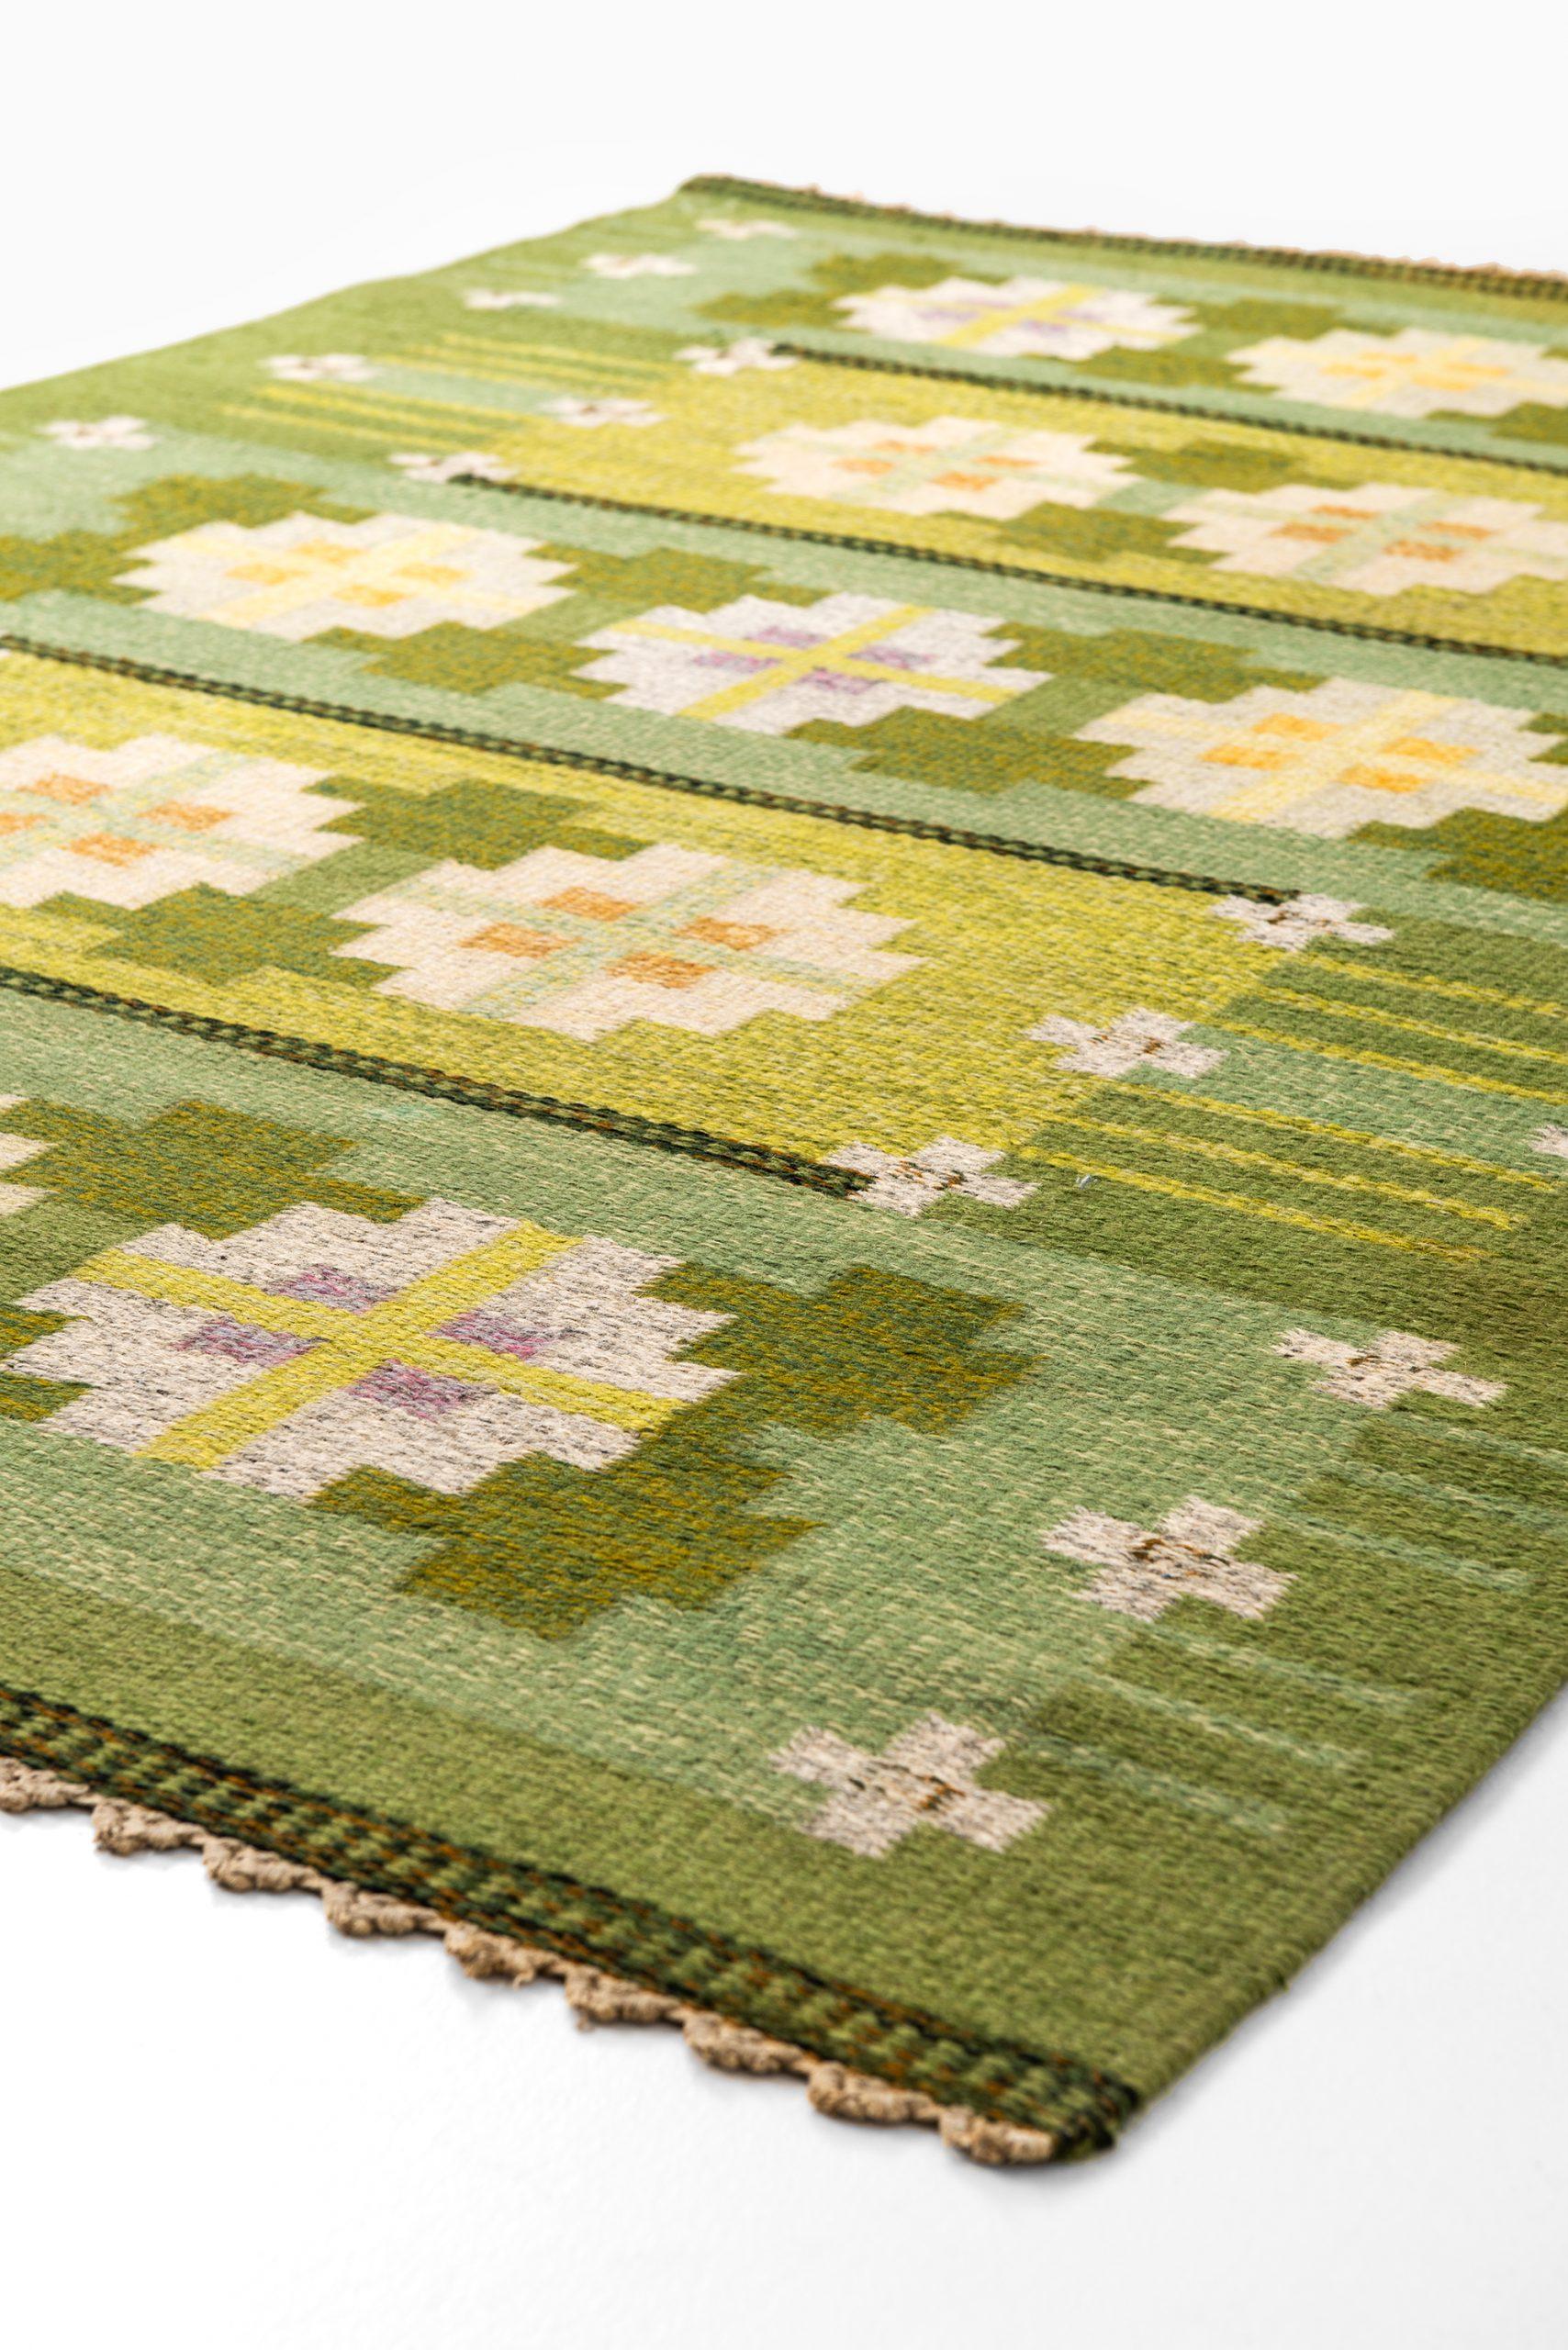 Mid-20th Century Ingegerd Silow Flat-Weave Carpet Produced in Sweden